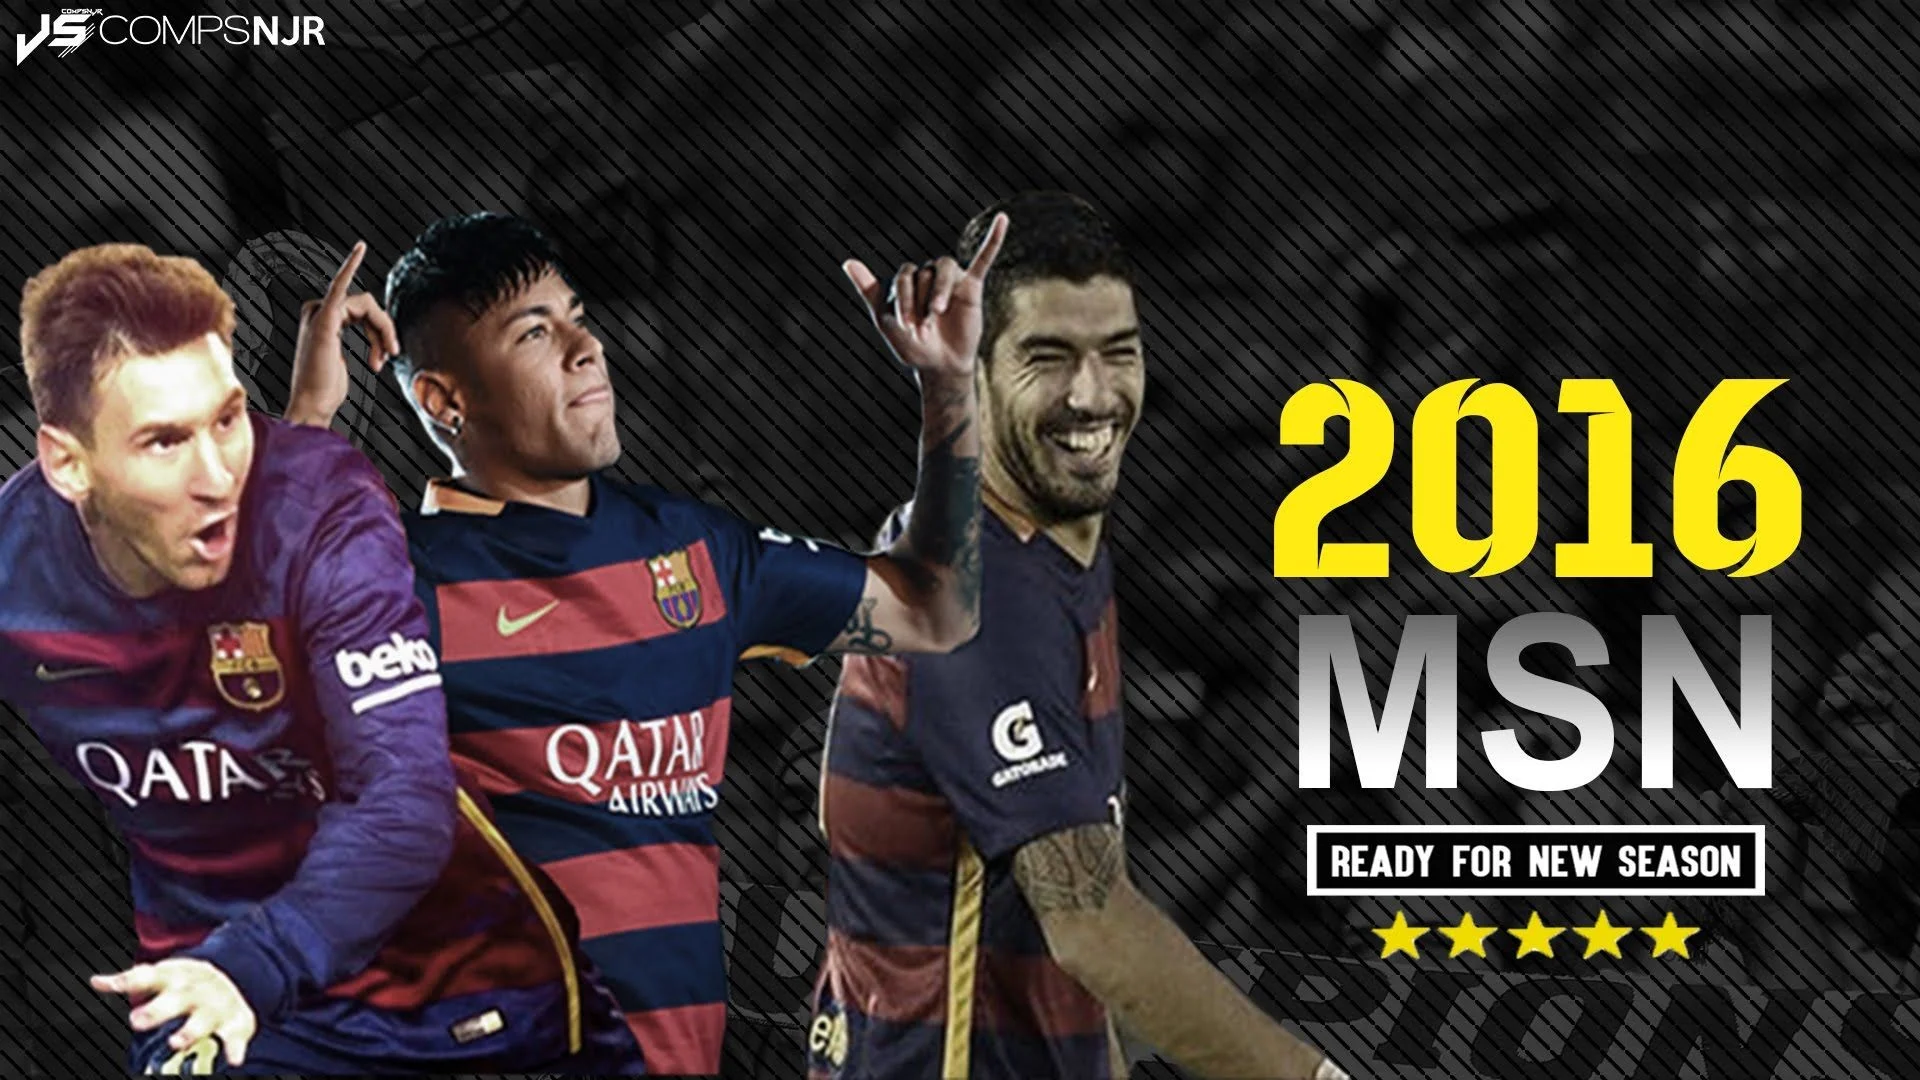 Messi, Suarez Neymar Ready for 2015 / 2016 Season